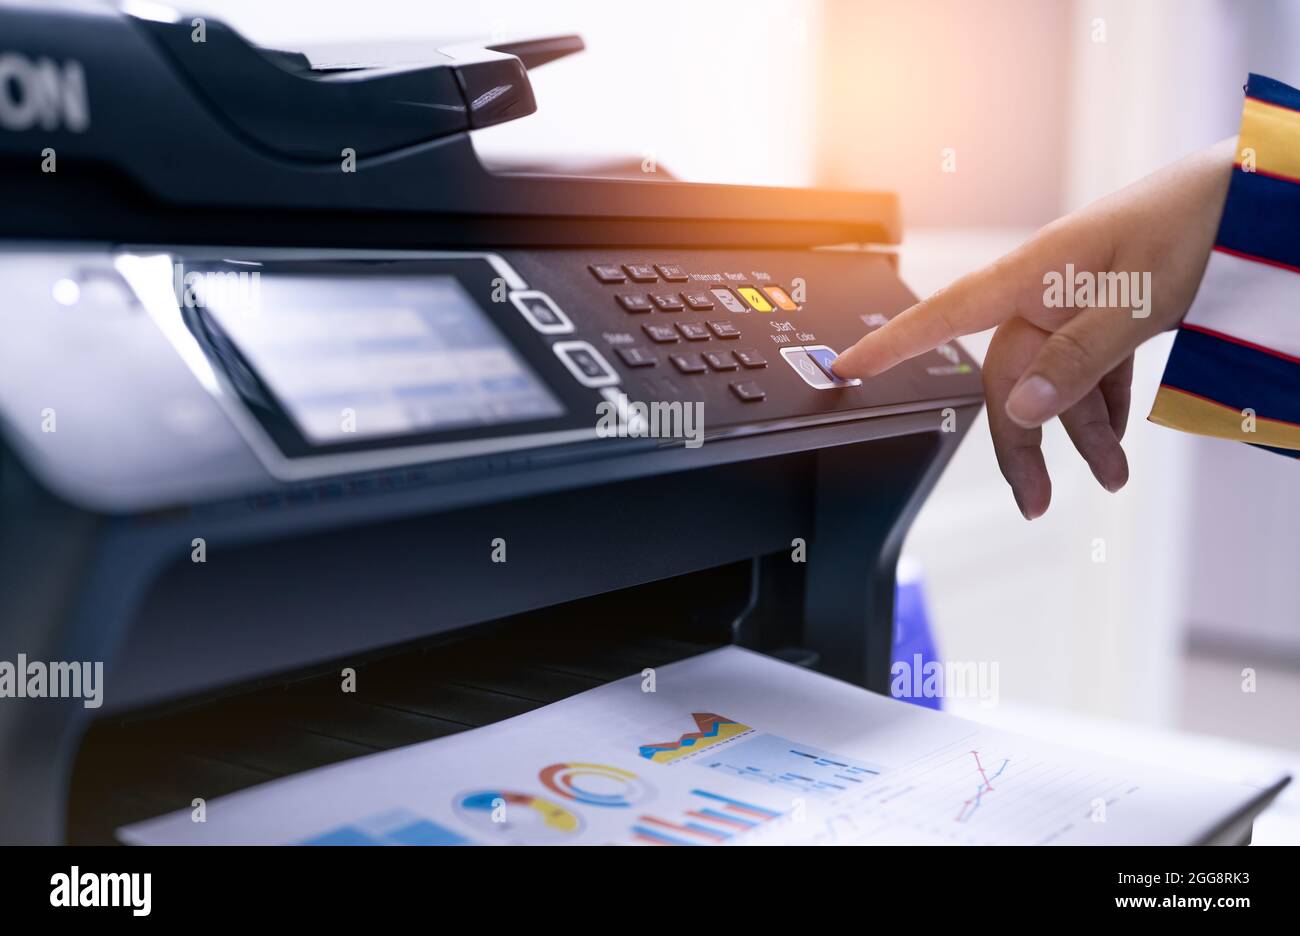 Büromitarbeiter drucken Papier auf einem Multifunktions-Laserdrucker.  Kopier-, Druck-, Scan- und Faxgerät im Büro. Moderne Drucktechnologie.  Kopiergerät Stockfotografie - Alamy